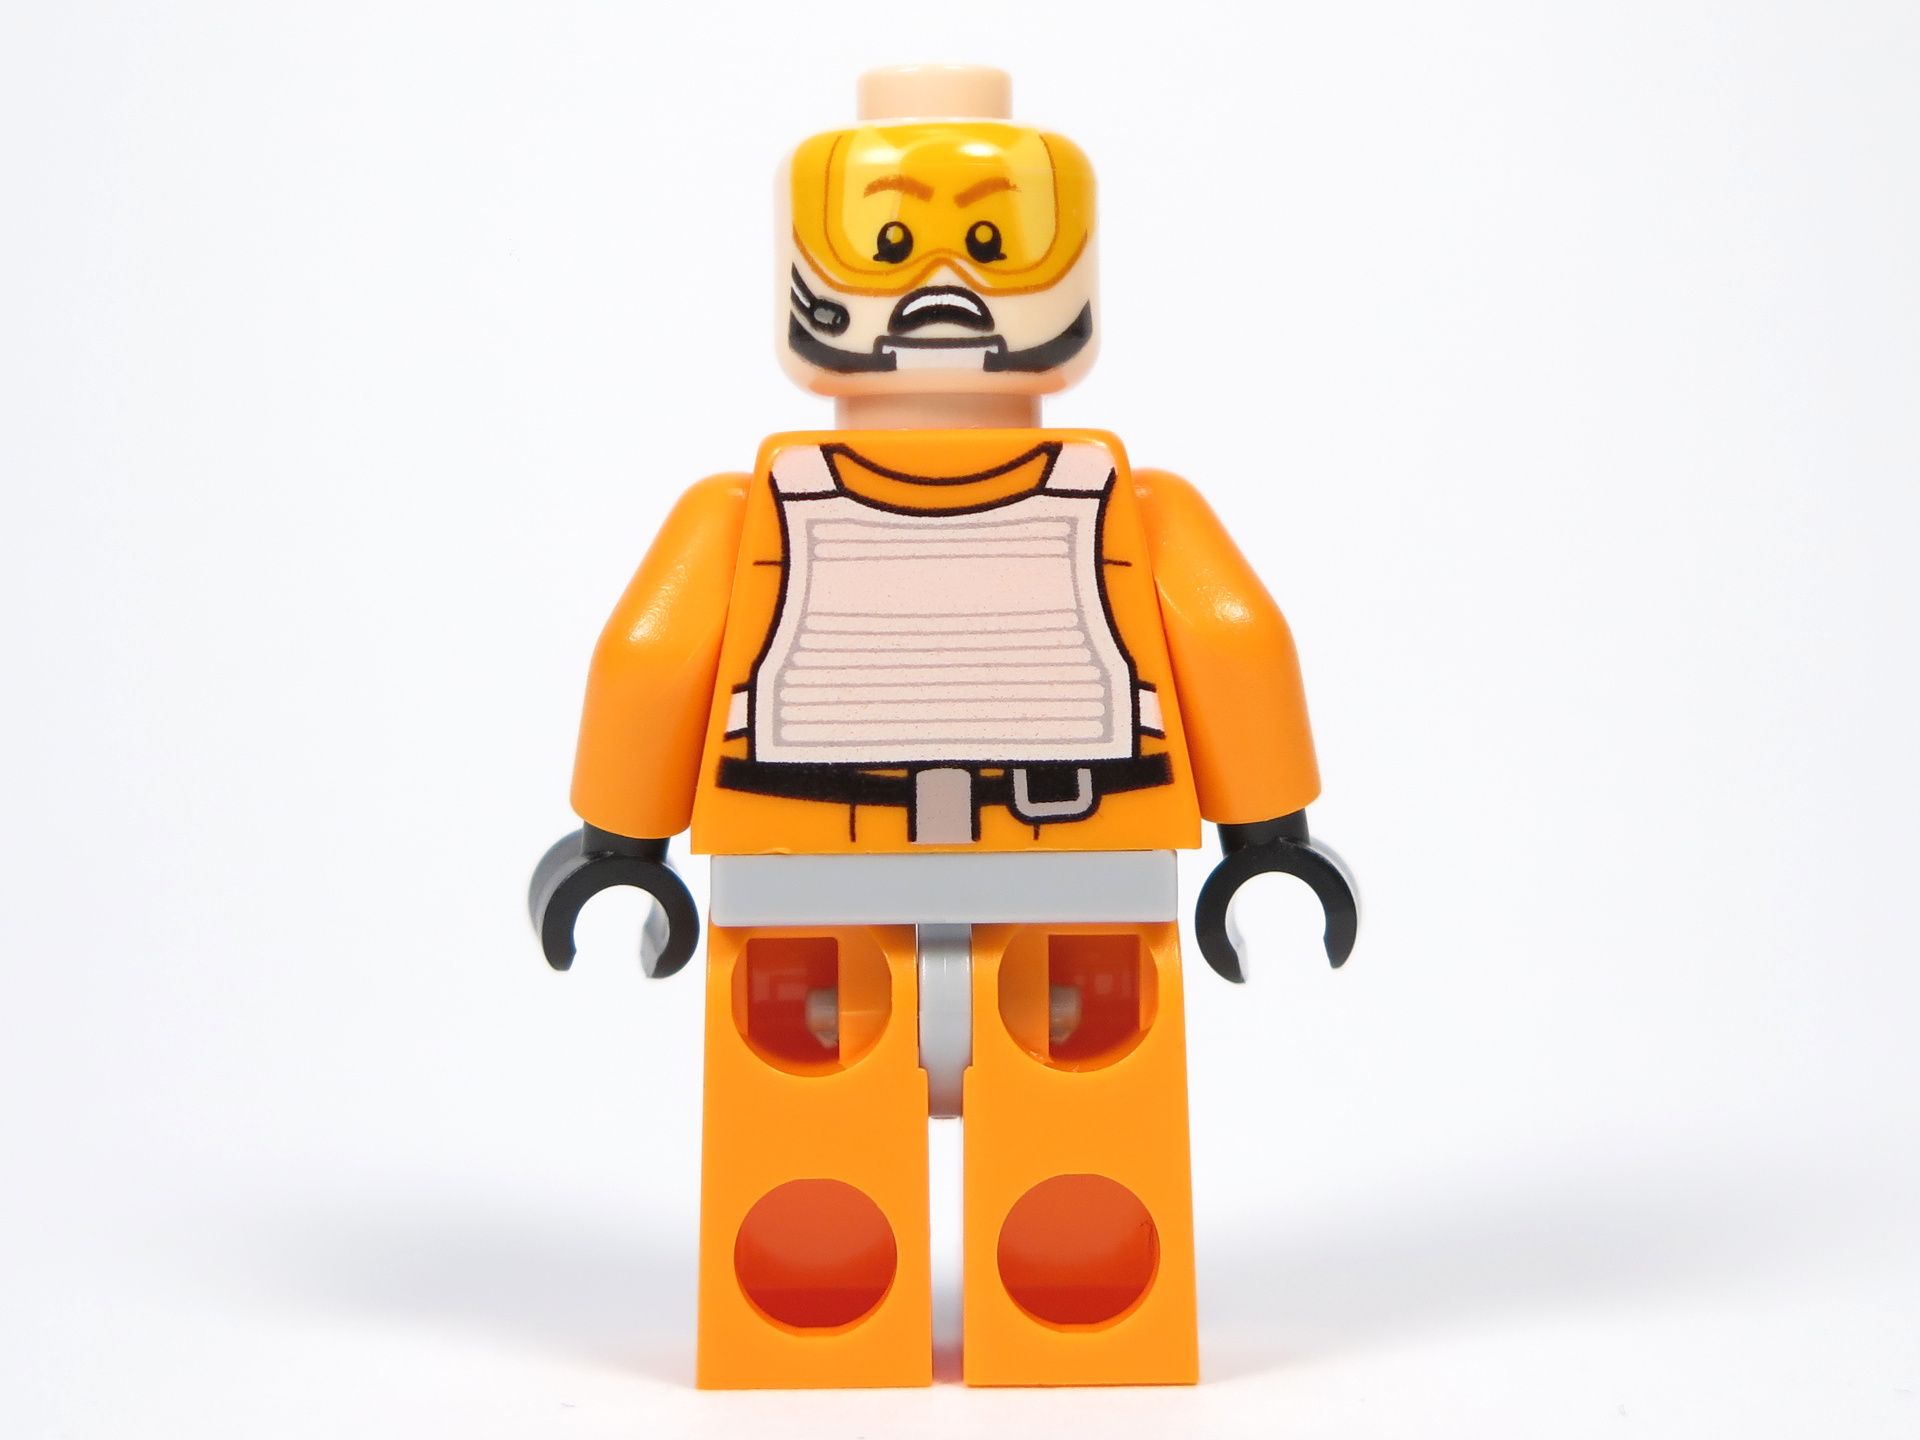 LEGO® Star Wars™ UCS Y-Wing Starfighter - Minifigur Gold Leader, Jon "Dutch" Vander, alternatives Gesicht | ©2018 Brickzeit